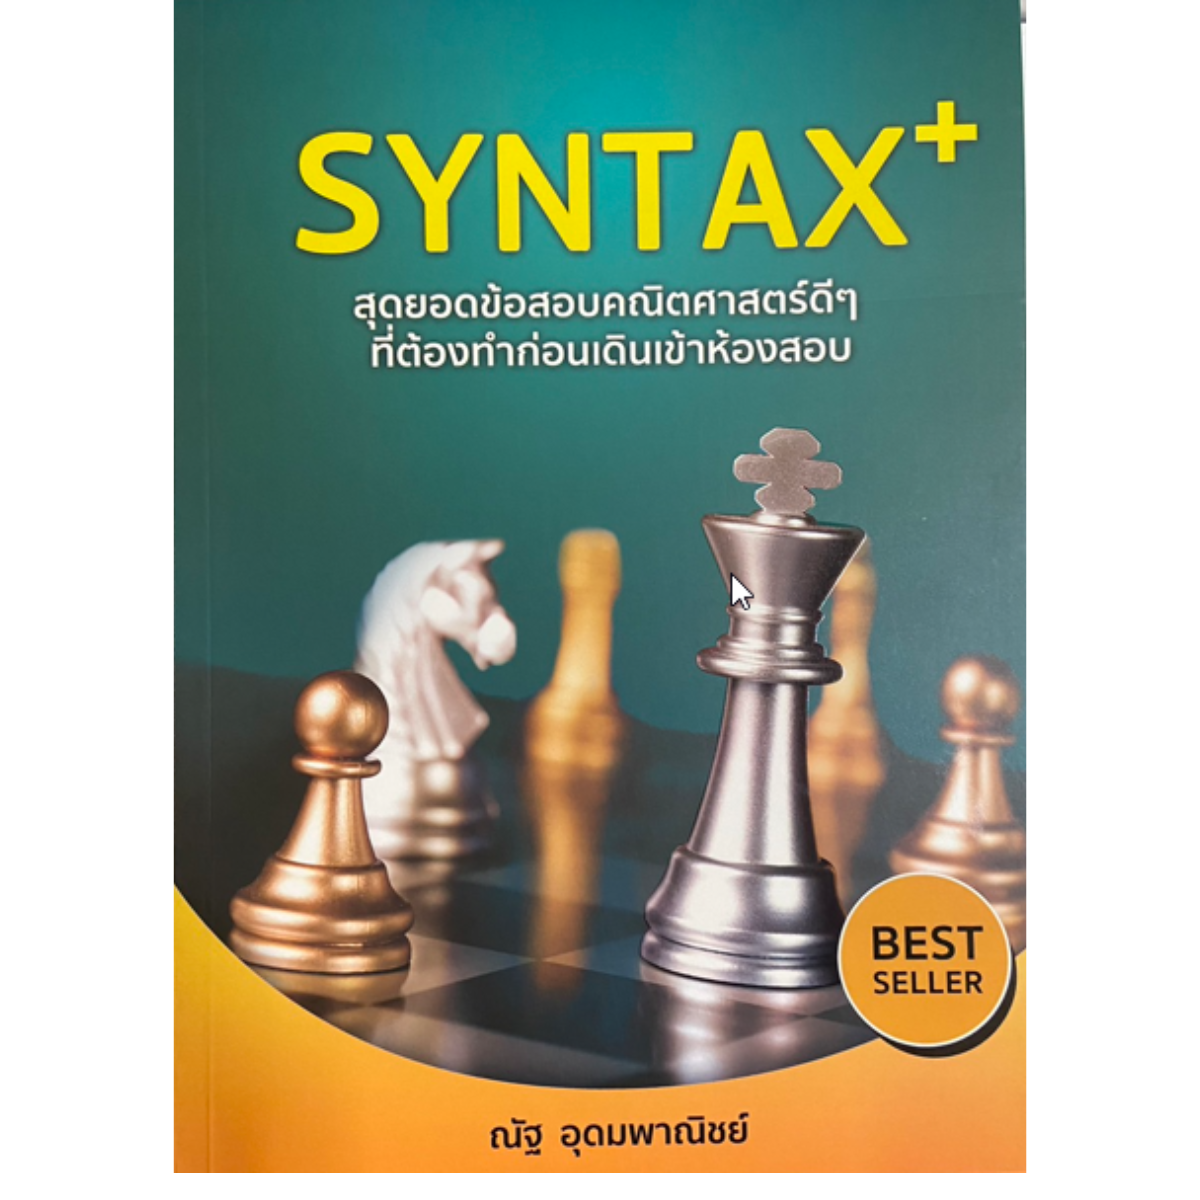 SYNTAX+ สุดยอดข้อสอบคณิตศาสตร์ดี ๆ ที่ต้องทำก่อนเดินเข้าห้องสอบ (หลักสูตรใหม่ สสวท.)